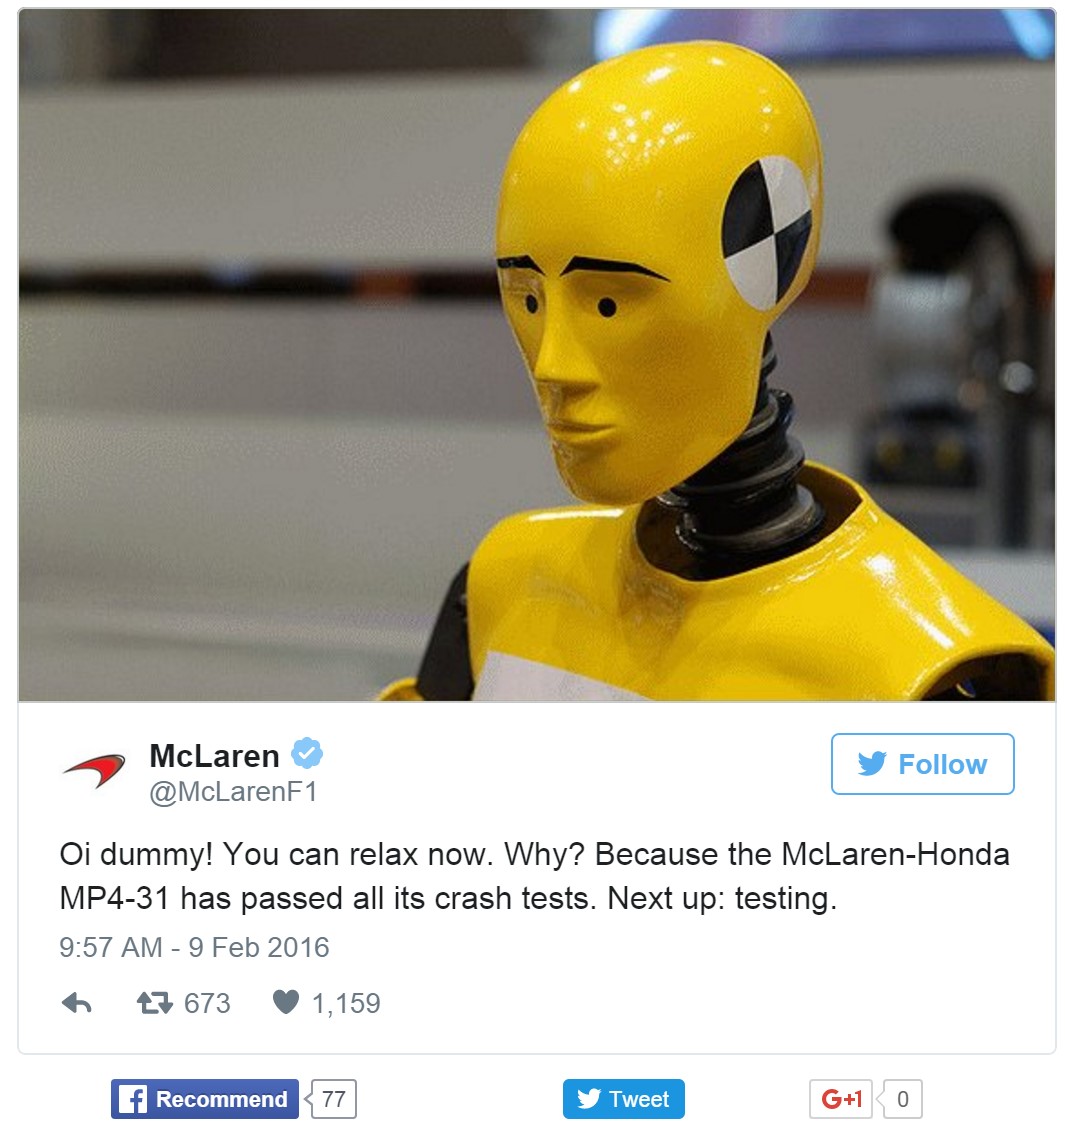 McLaren tweet